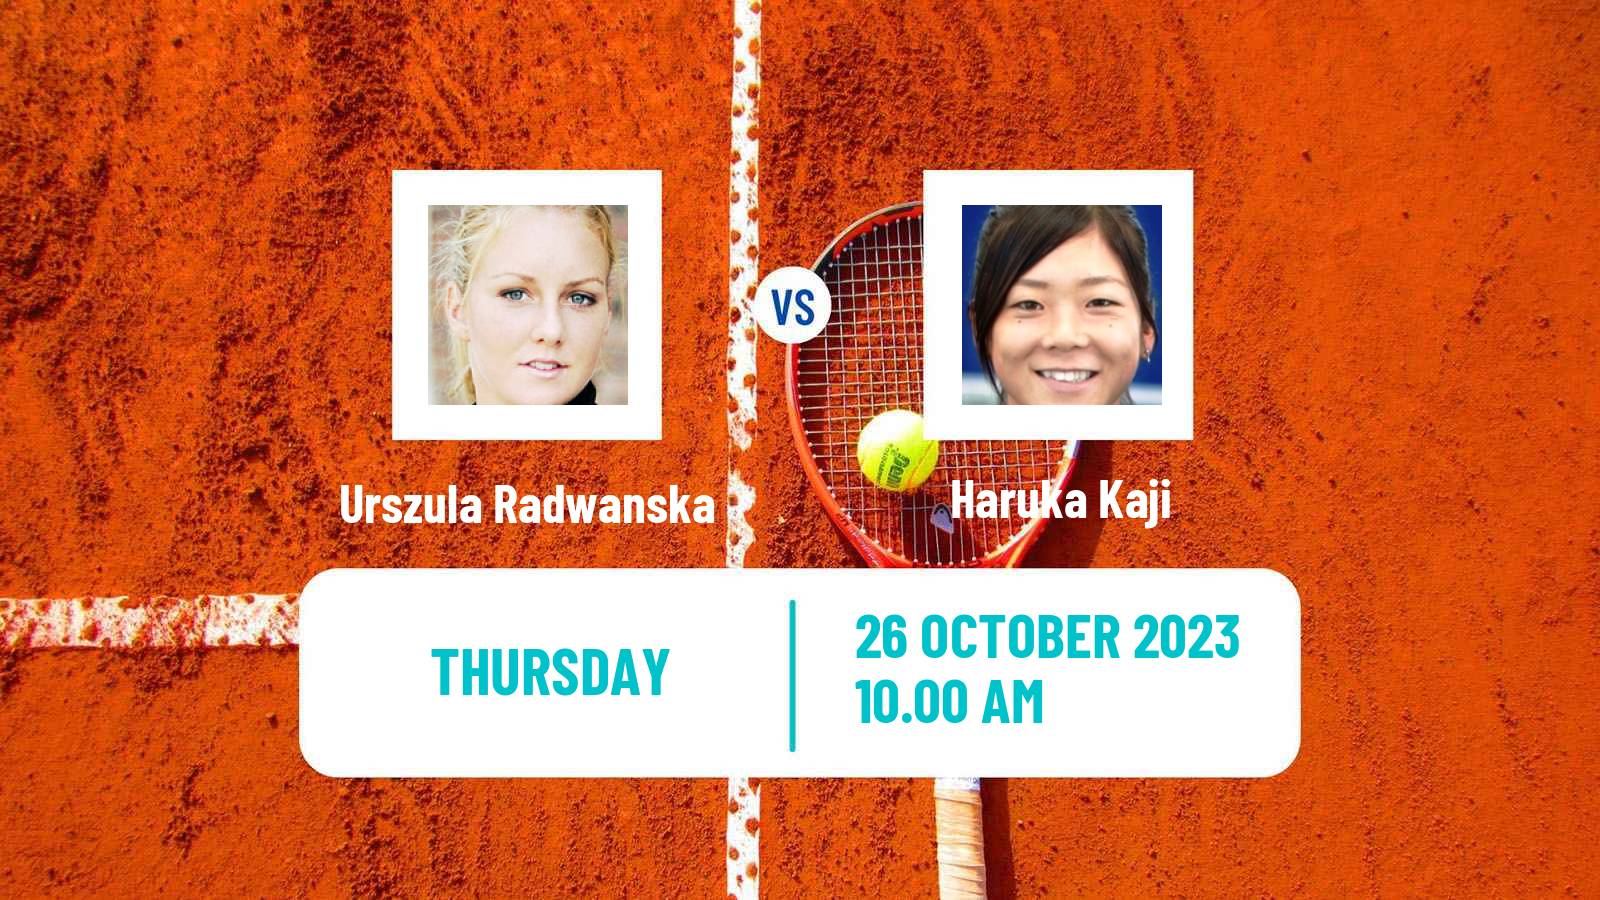 Tennis ITF W60 Toronto Women Urszula Radwanska - Haruka Kaji